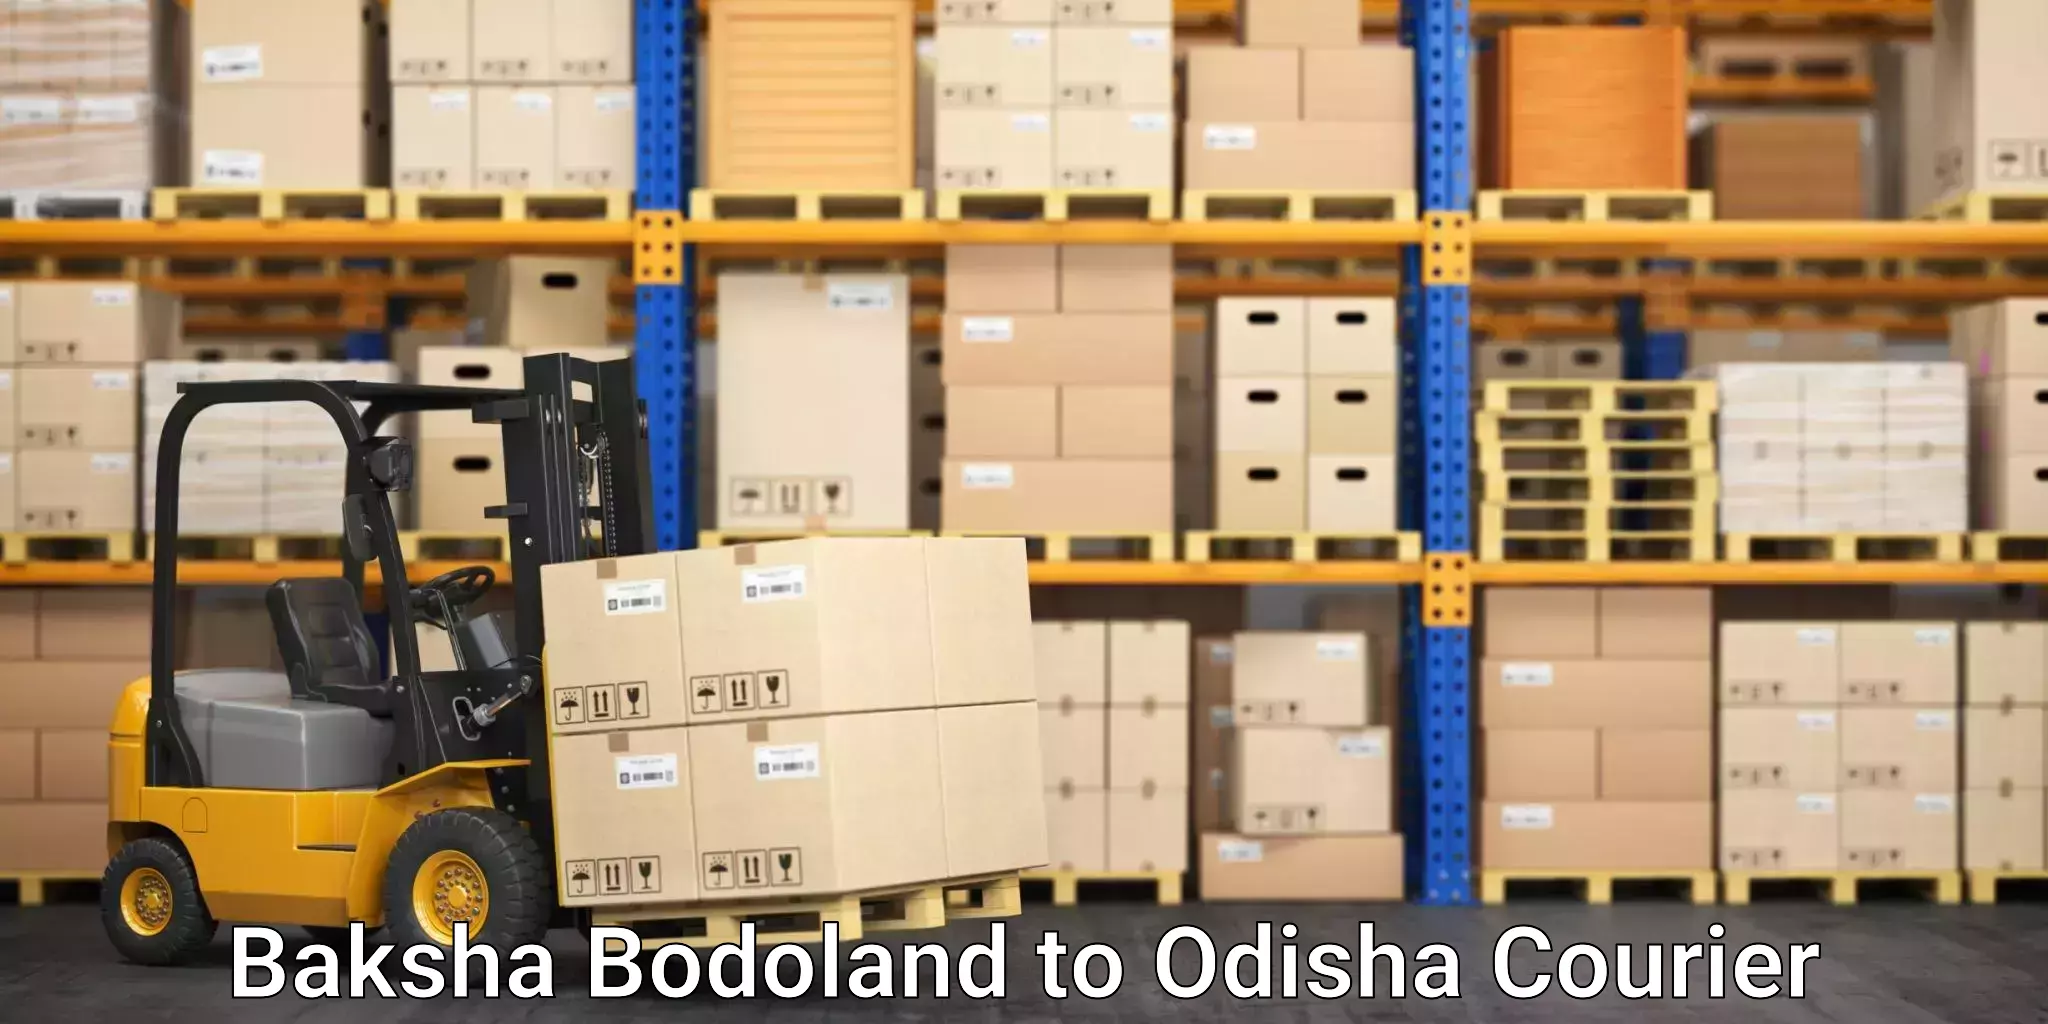 Business shipping needs Baksha Bodoland to Dunguripali